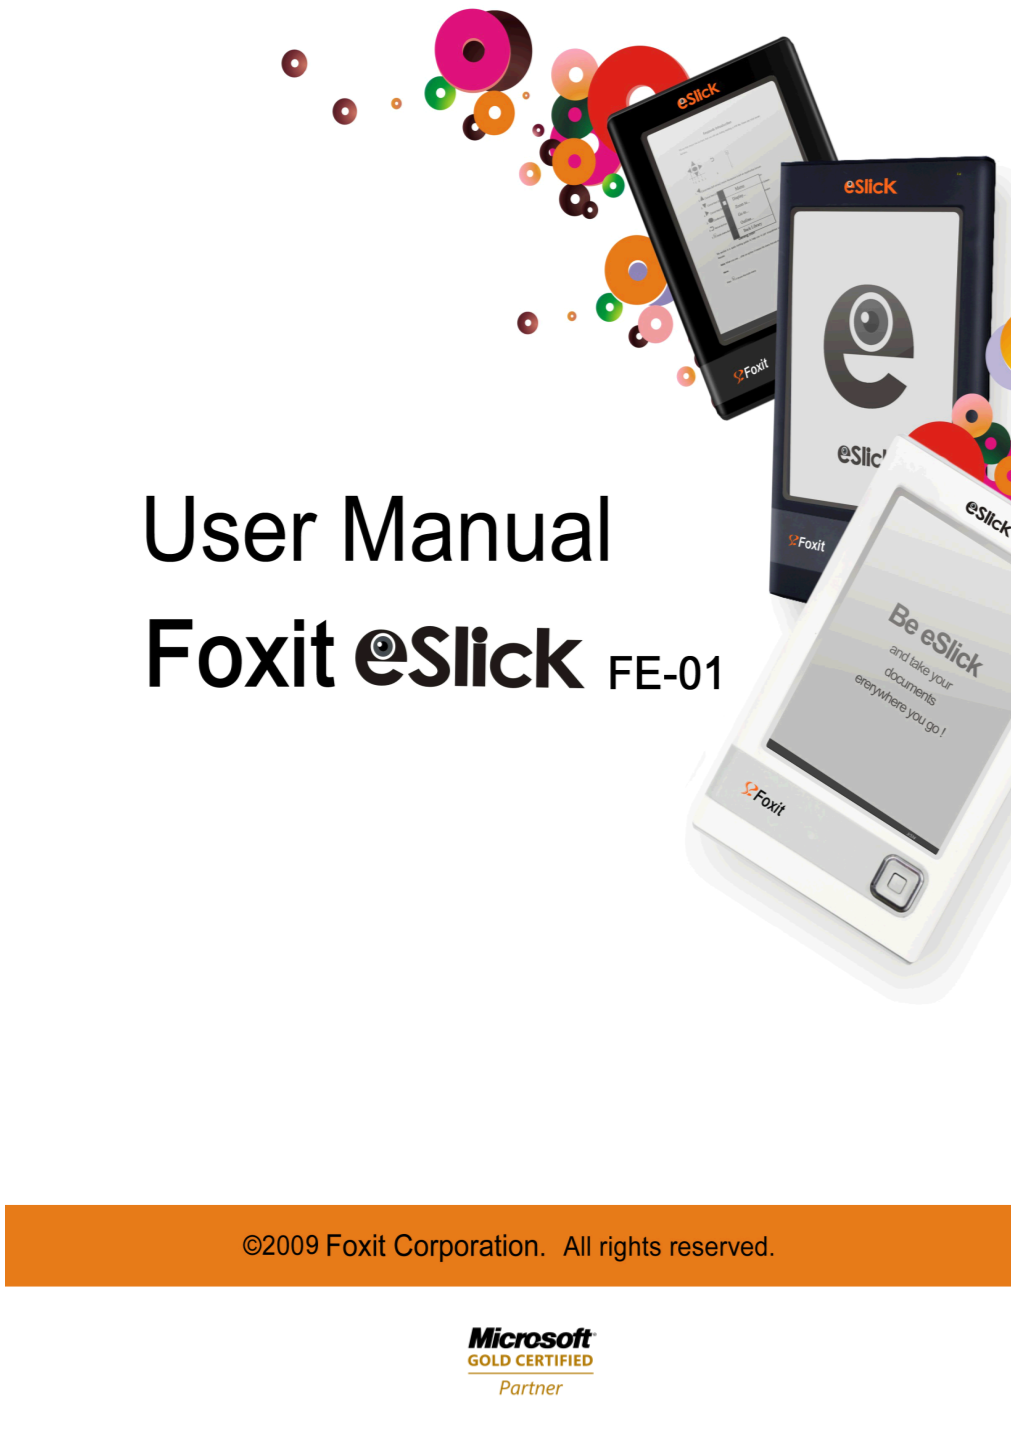 Foxit Eslick User Manual